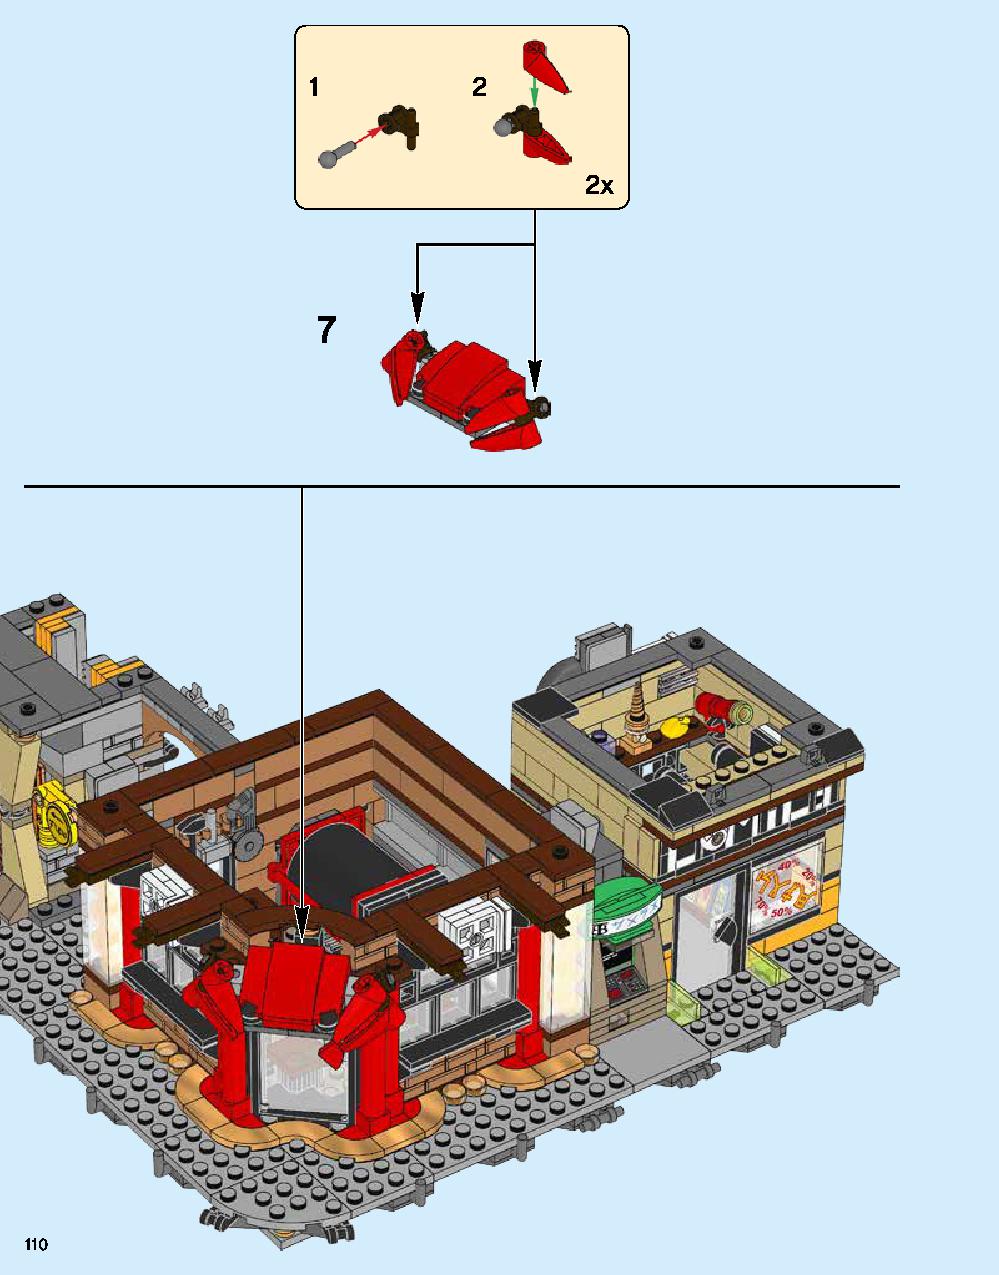 ニンジャゴー シティ 70620 レゴの商品情報 レゴの説明書・組立方法 110 page